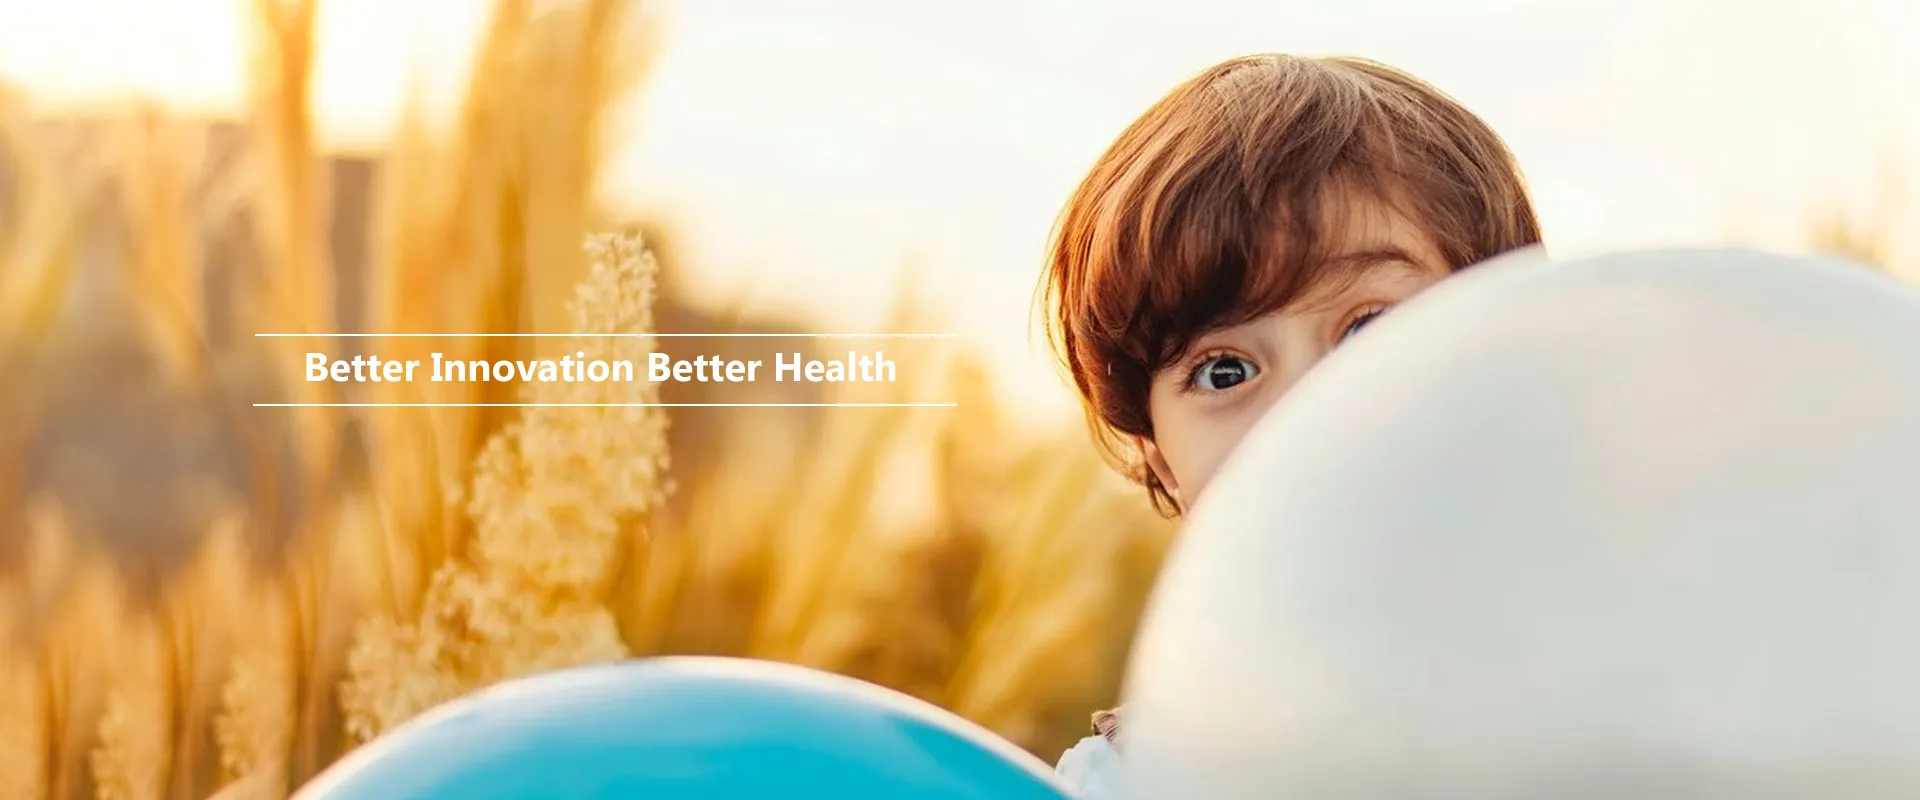 نوآوری بهتر سلامت بهتر